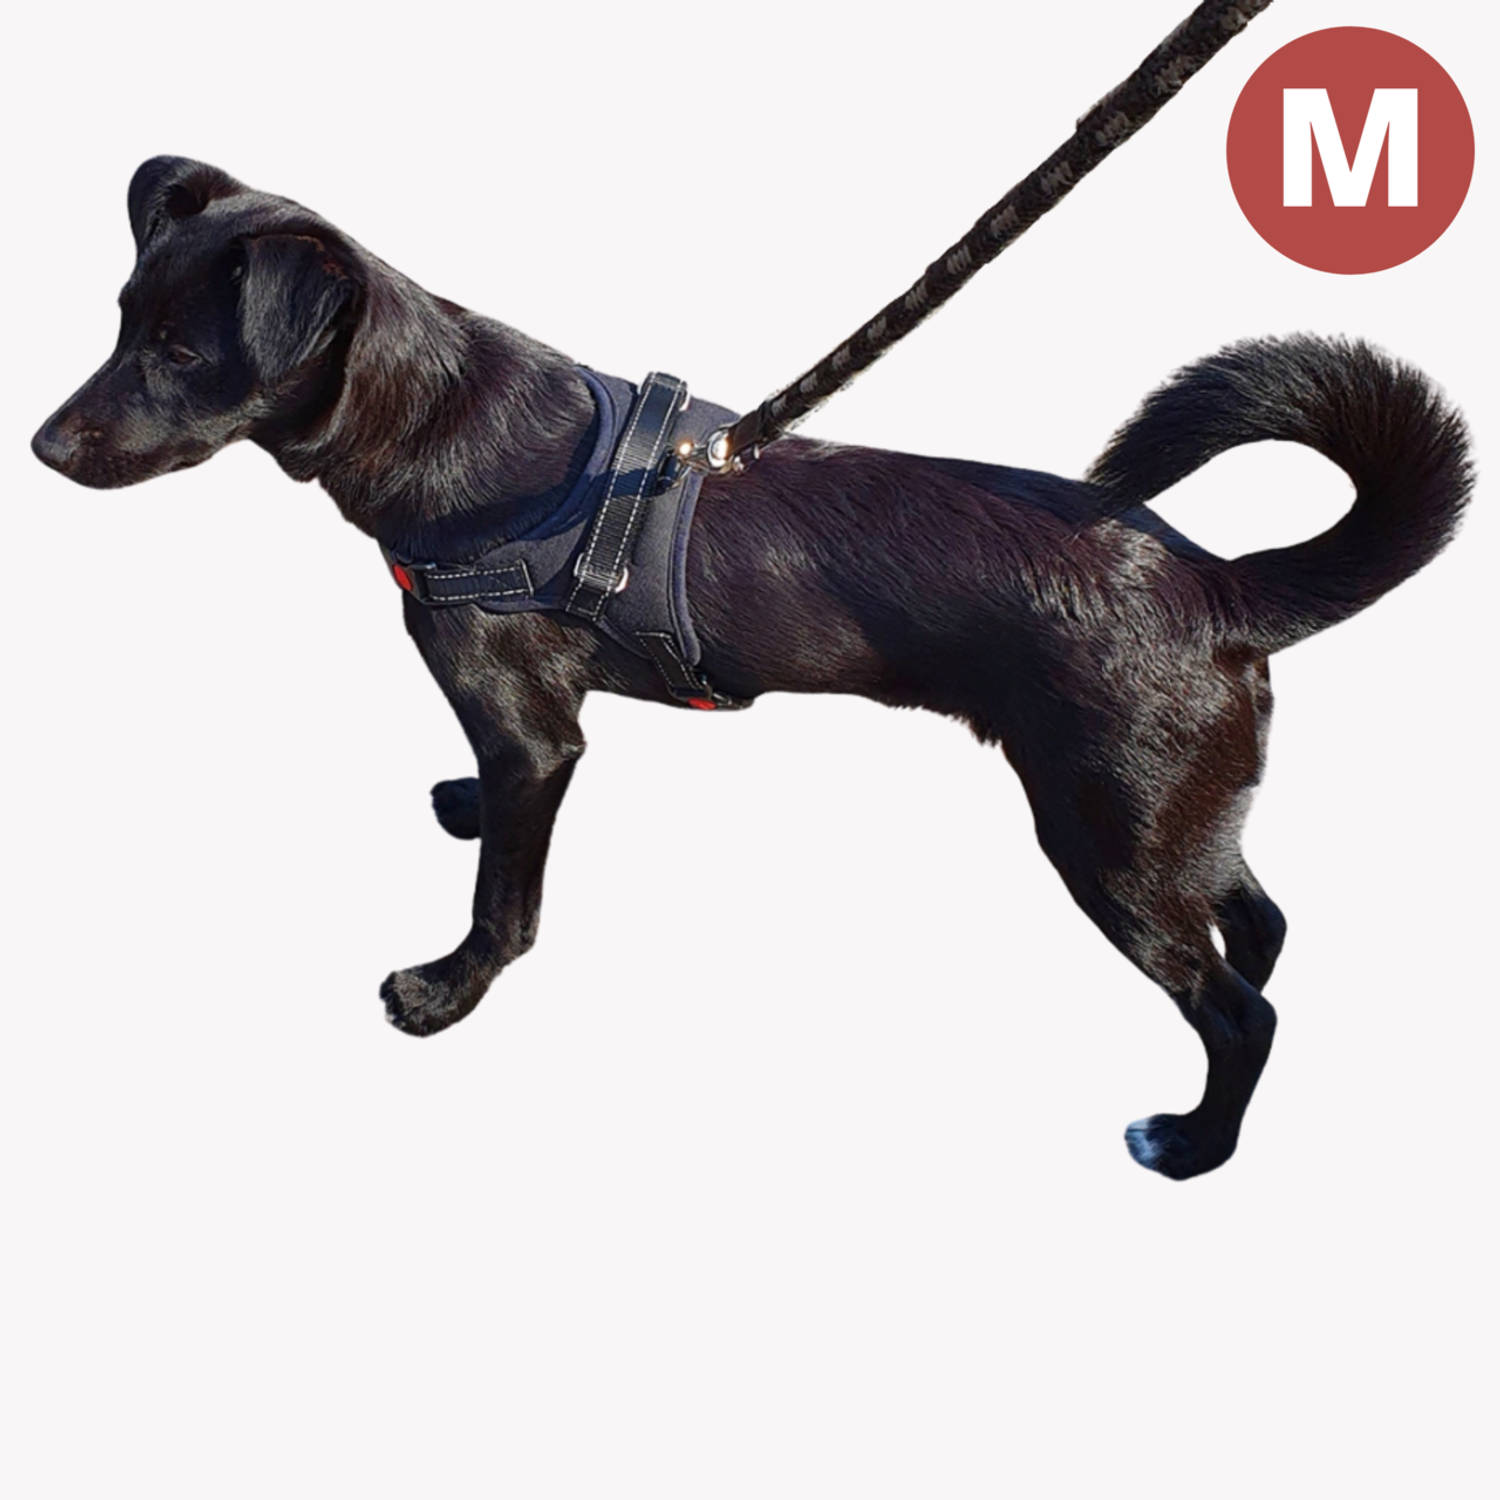 reservoir vertraging Openlijk Hondentuig - Hondenharnas - Hondentuigje Anti trek tuig hond - Reflecterend  - Zwart - Maat M (tot 30 kg) | Blokker